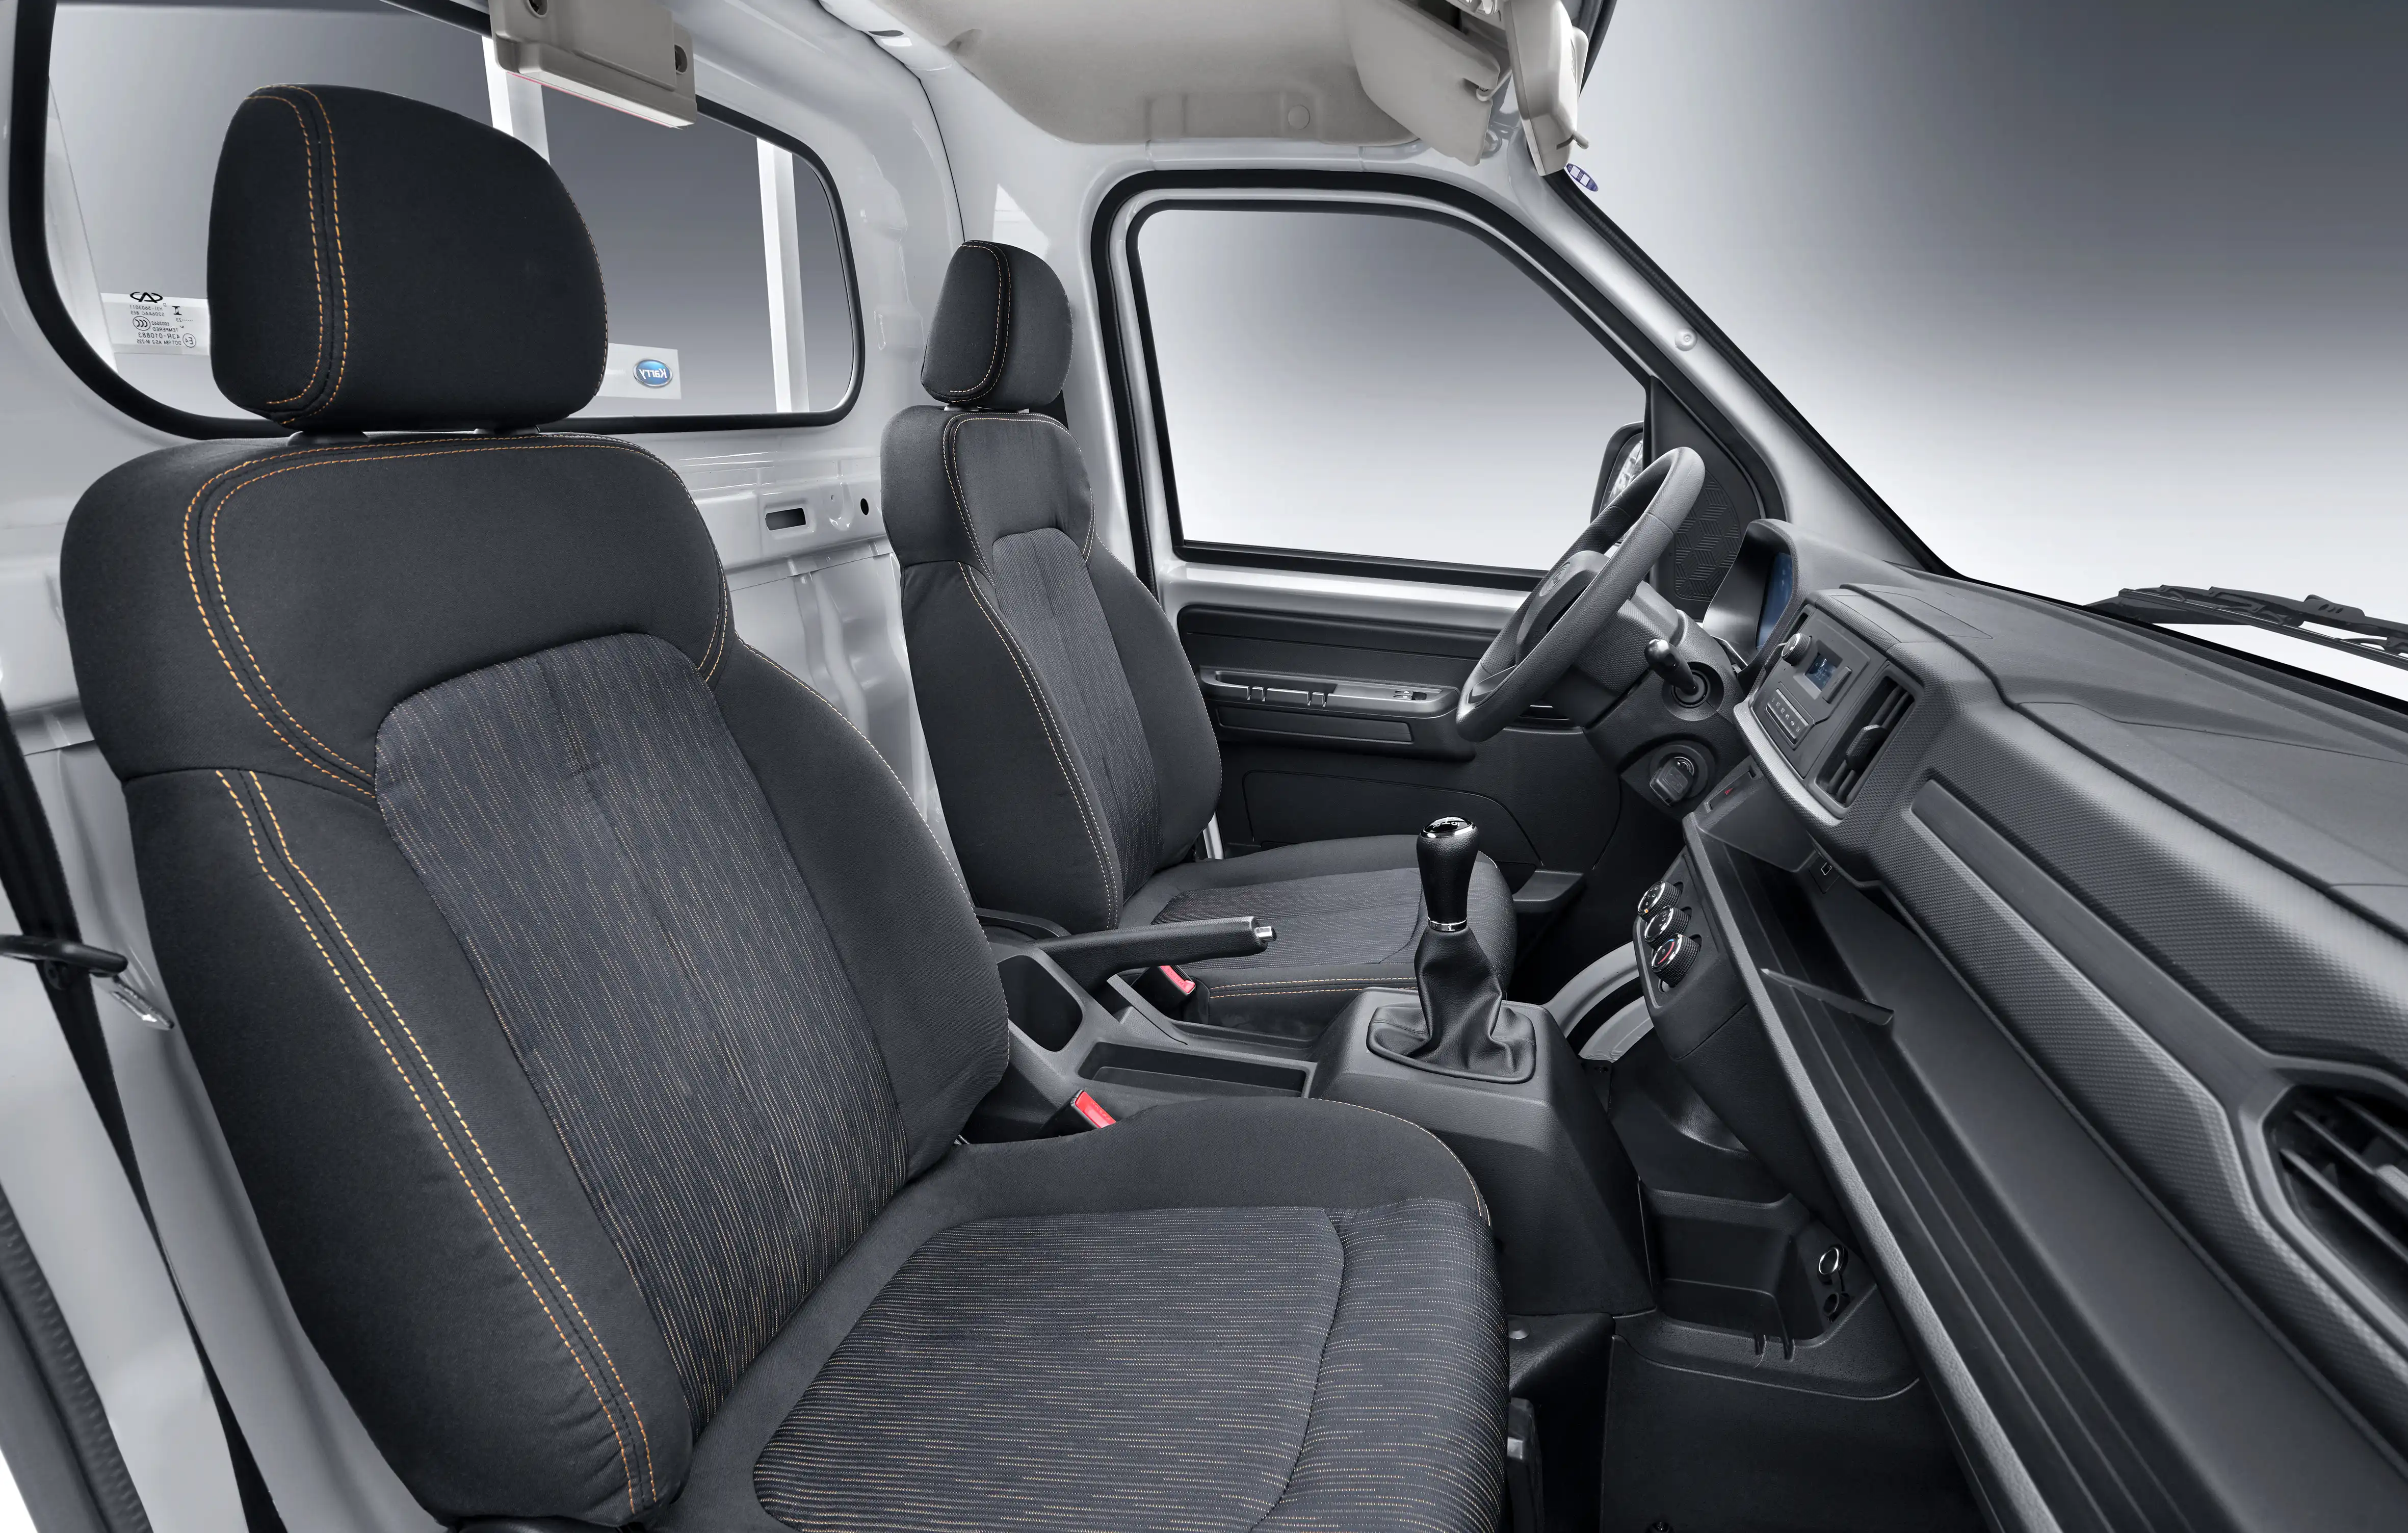 Vista interior del Karry Q51 Cabina Simple, mostrando el tablero y los asientos cómodos